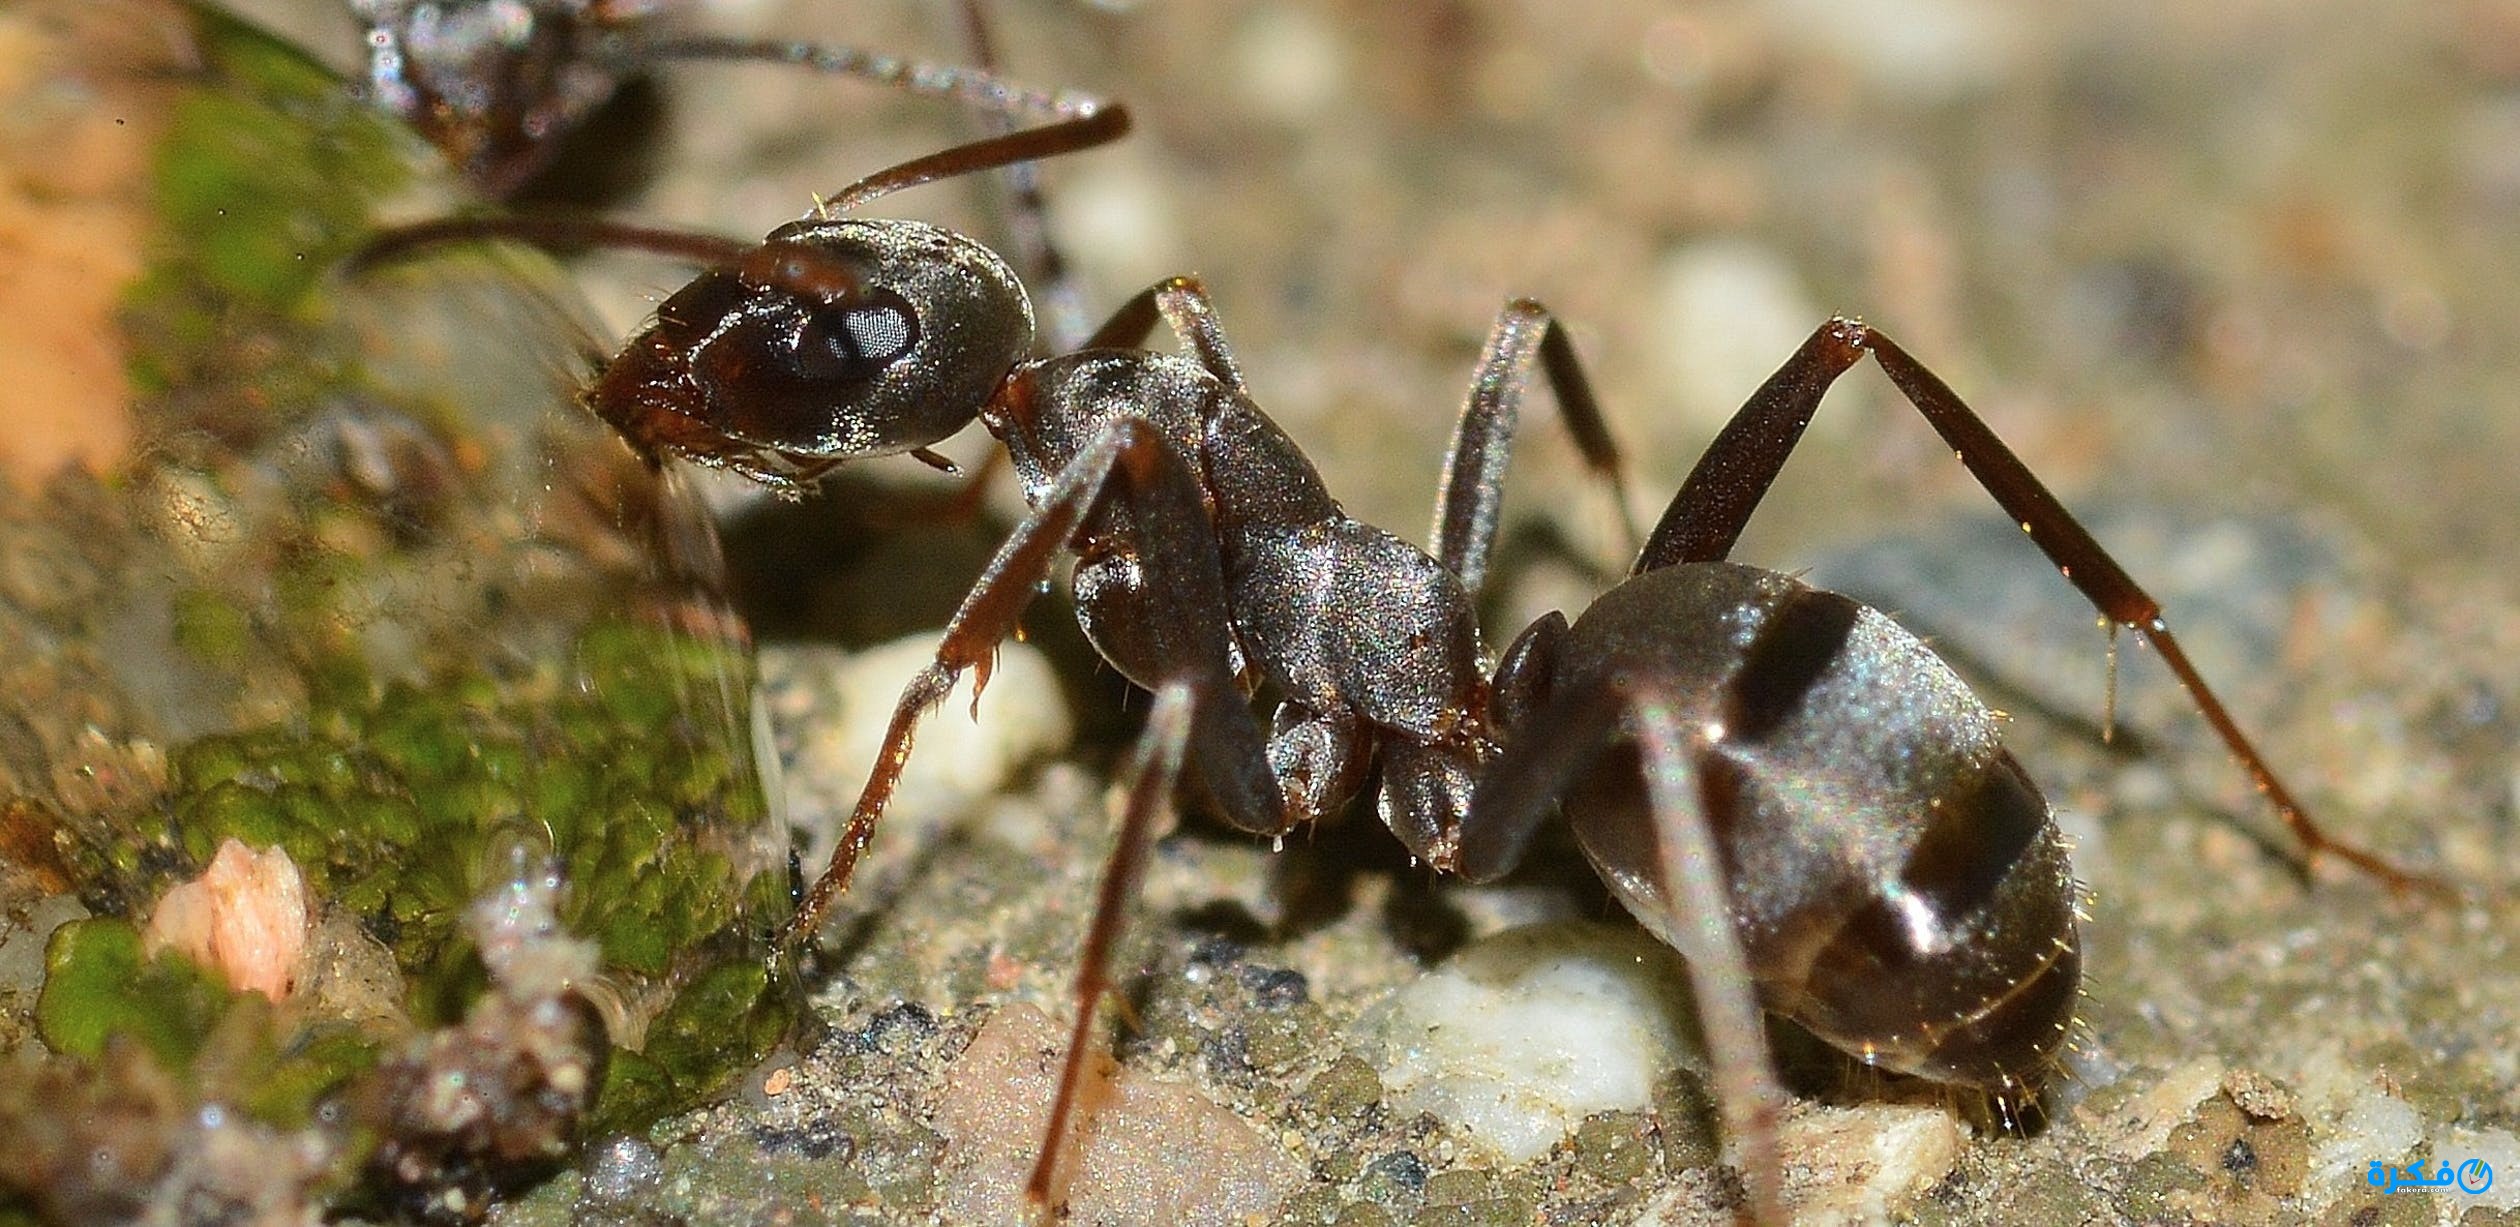 تفسير حلم النمل للحامل , معرفة وتفسير حلم النمل للحامل